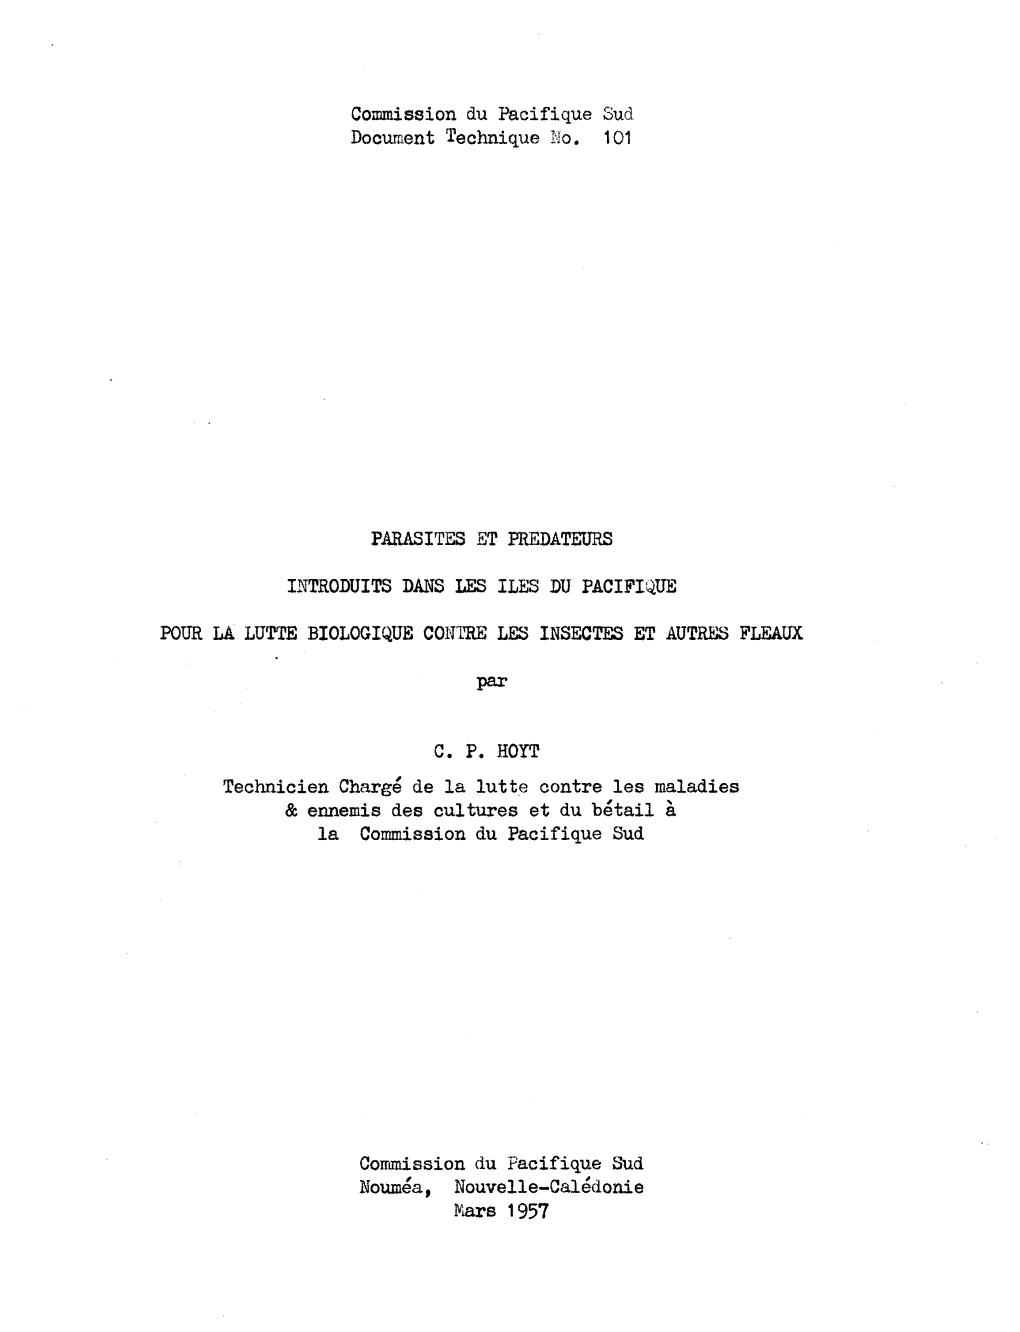 Commission Du Pacifique Sud Document Technique No. 101